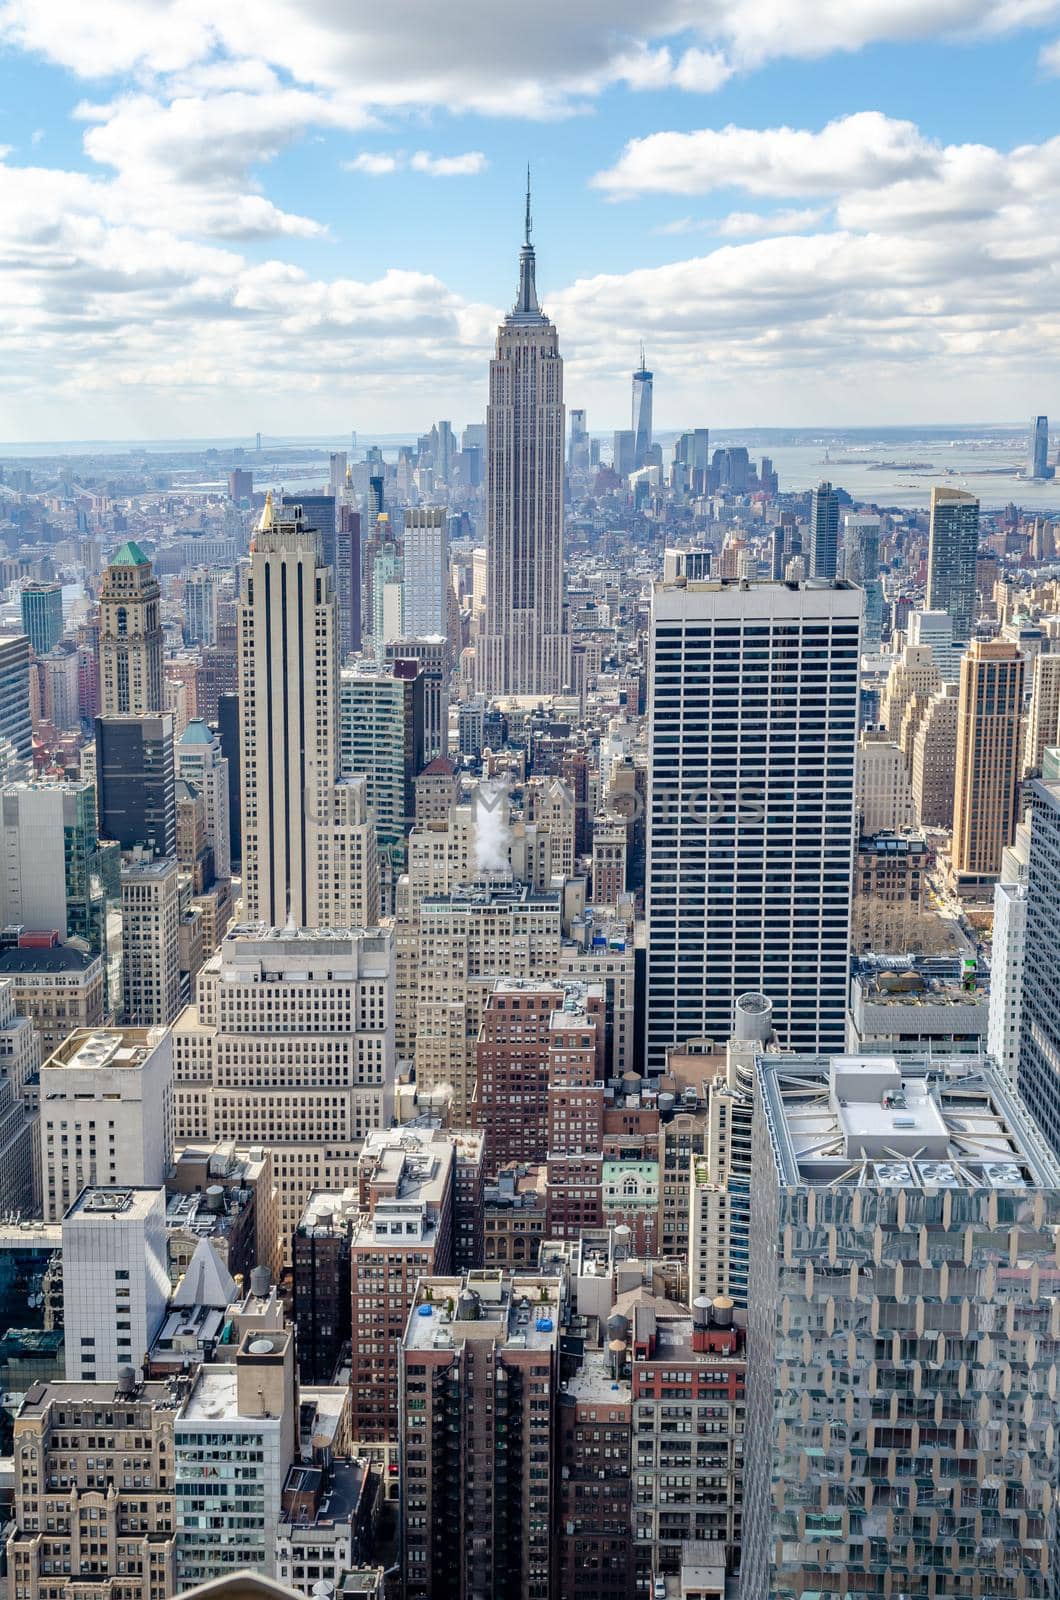 Manhattan Skyline with Empire State Building, New York City by bildgigant